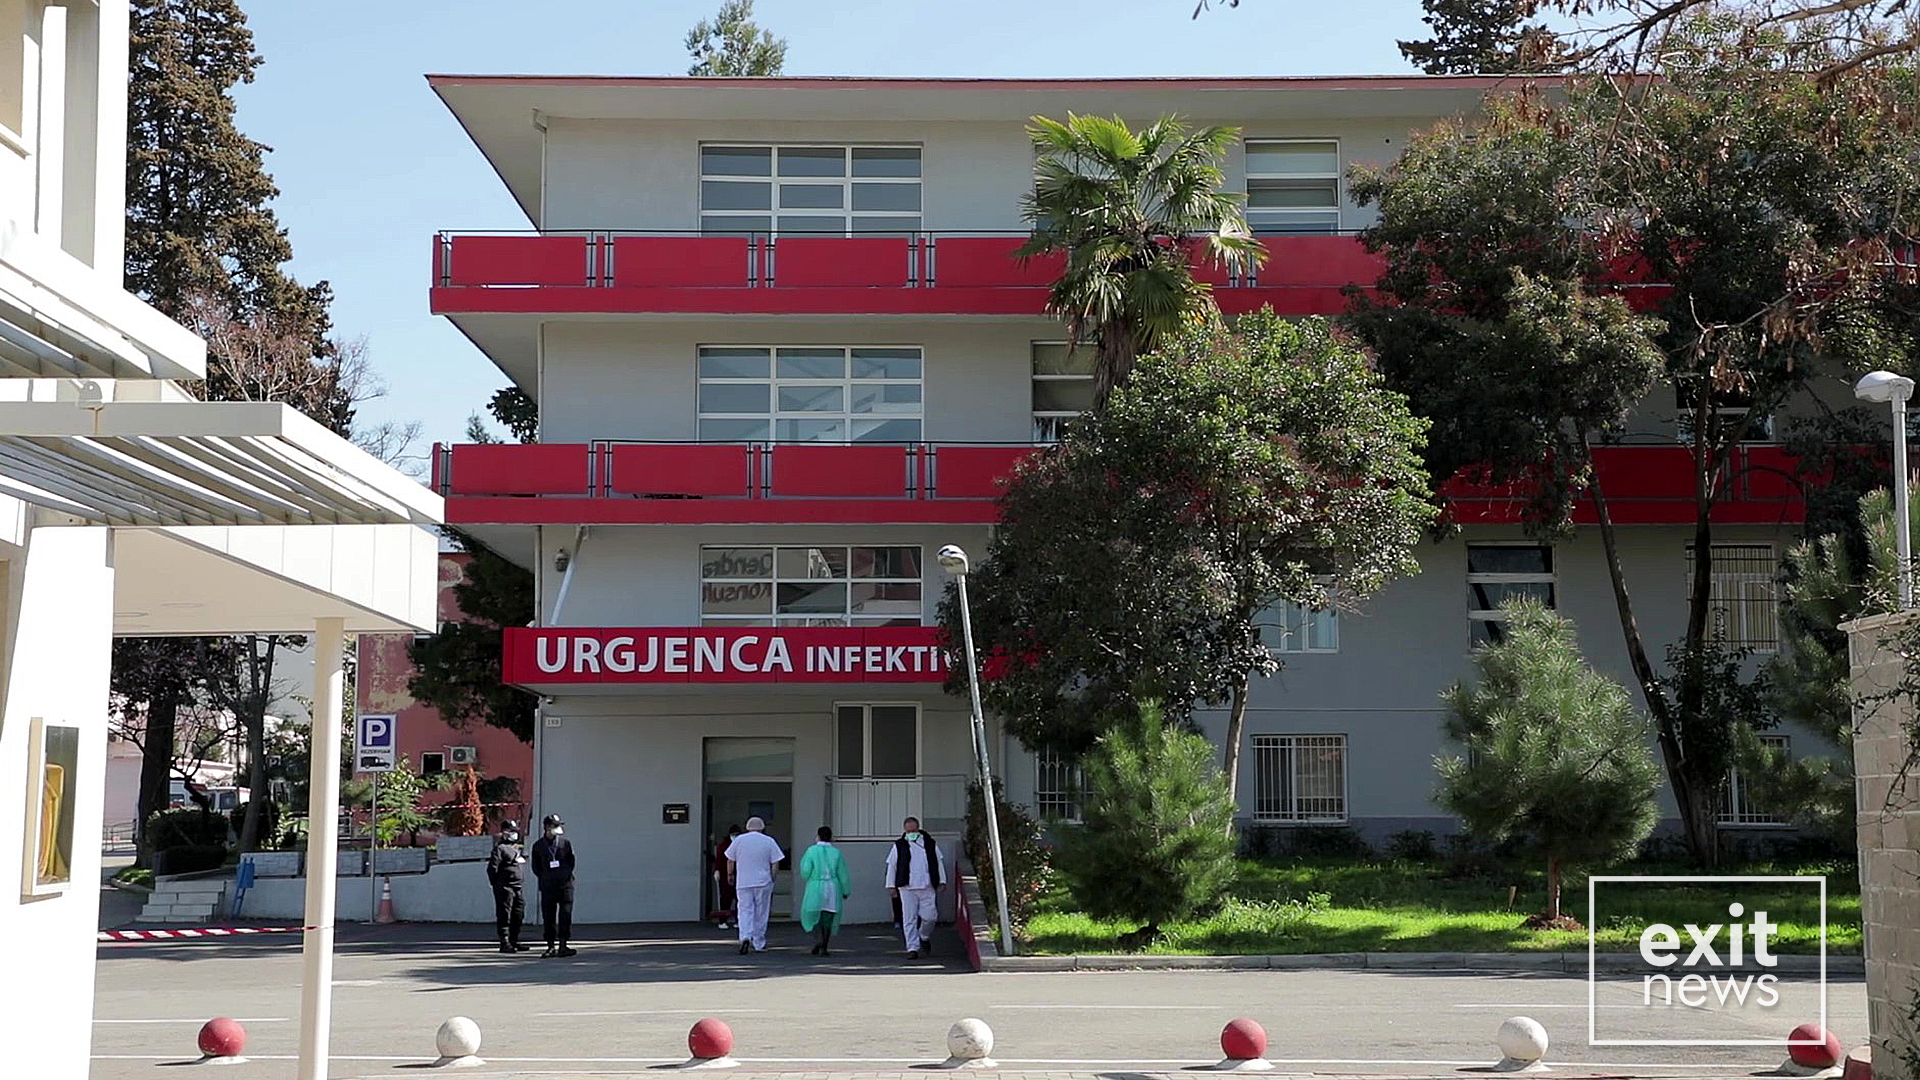 648 pacientë në spitalet Covid, hapet spitali i Elbasanit